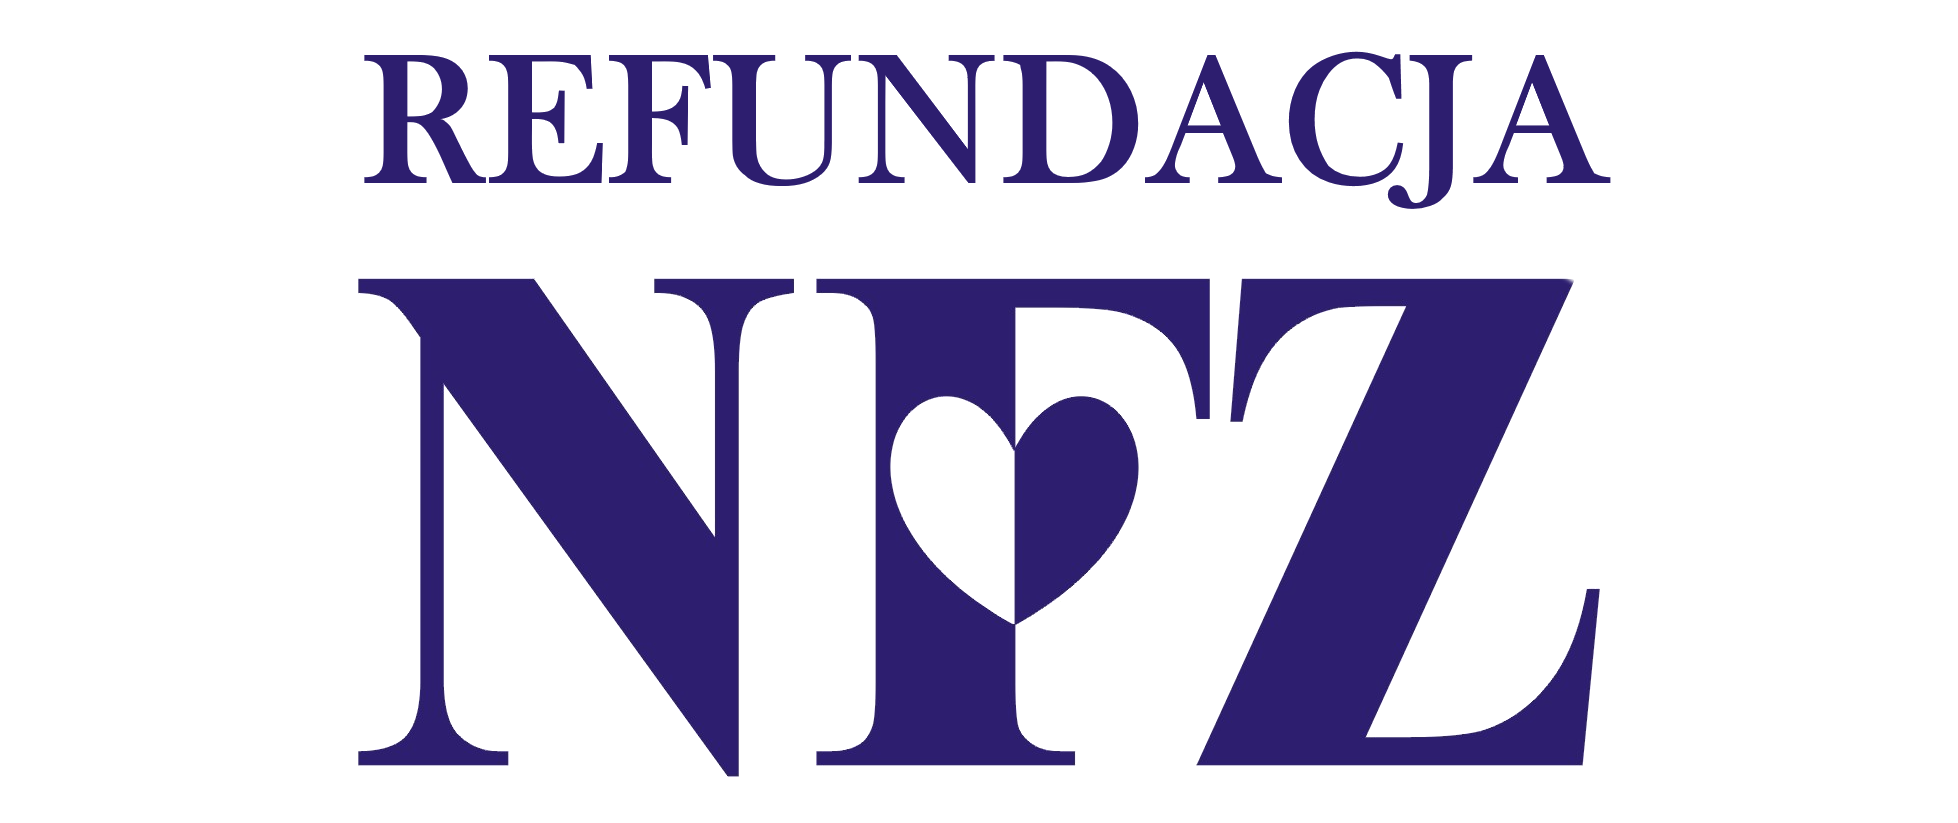 nfz logo